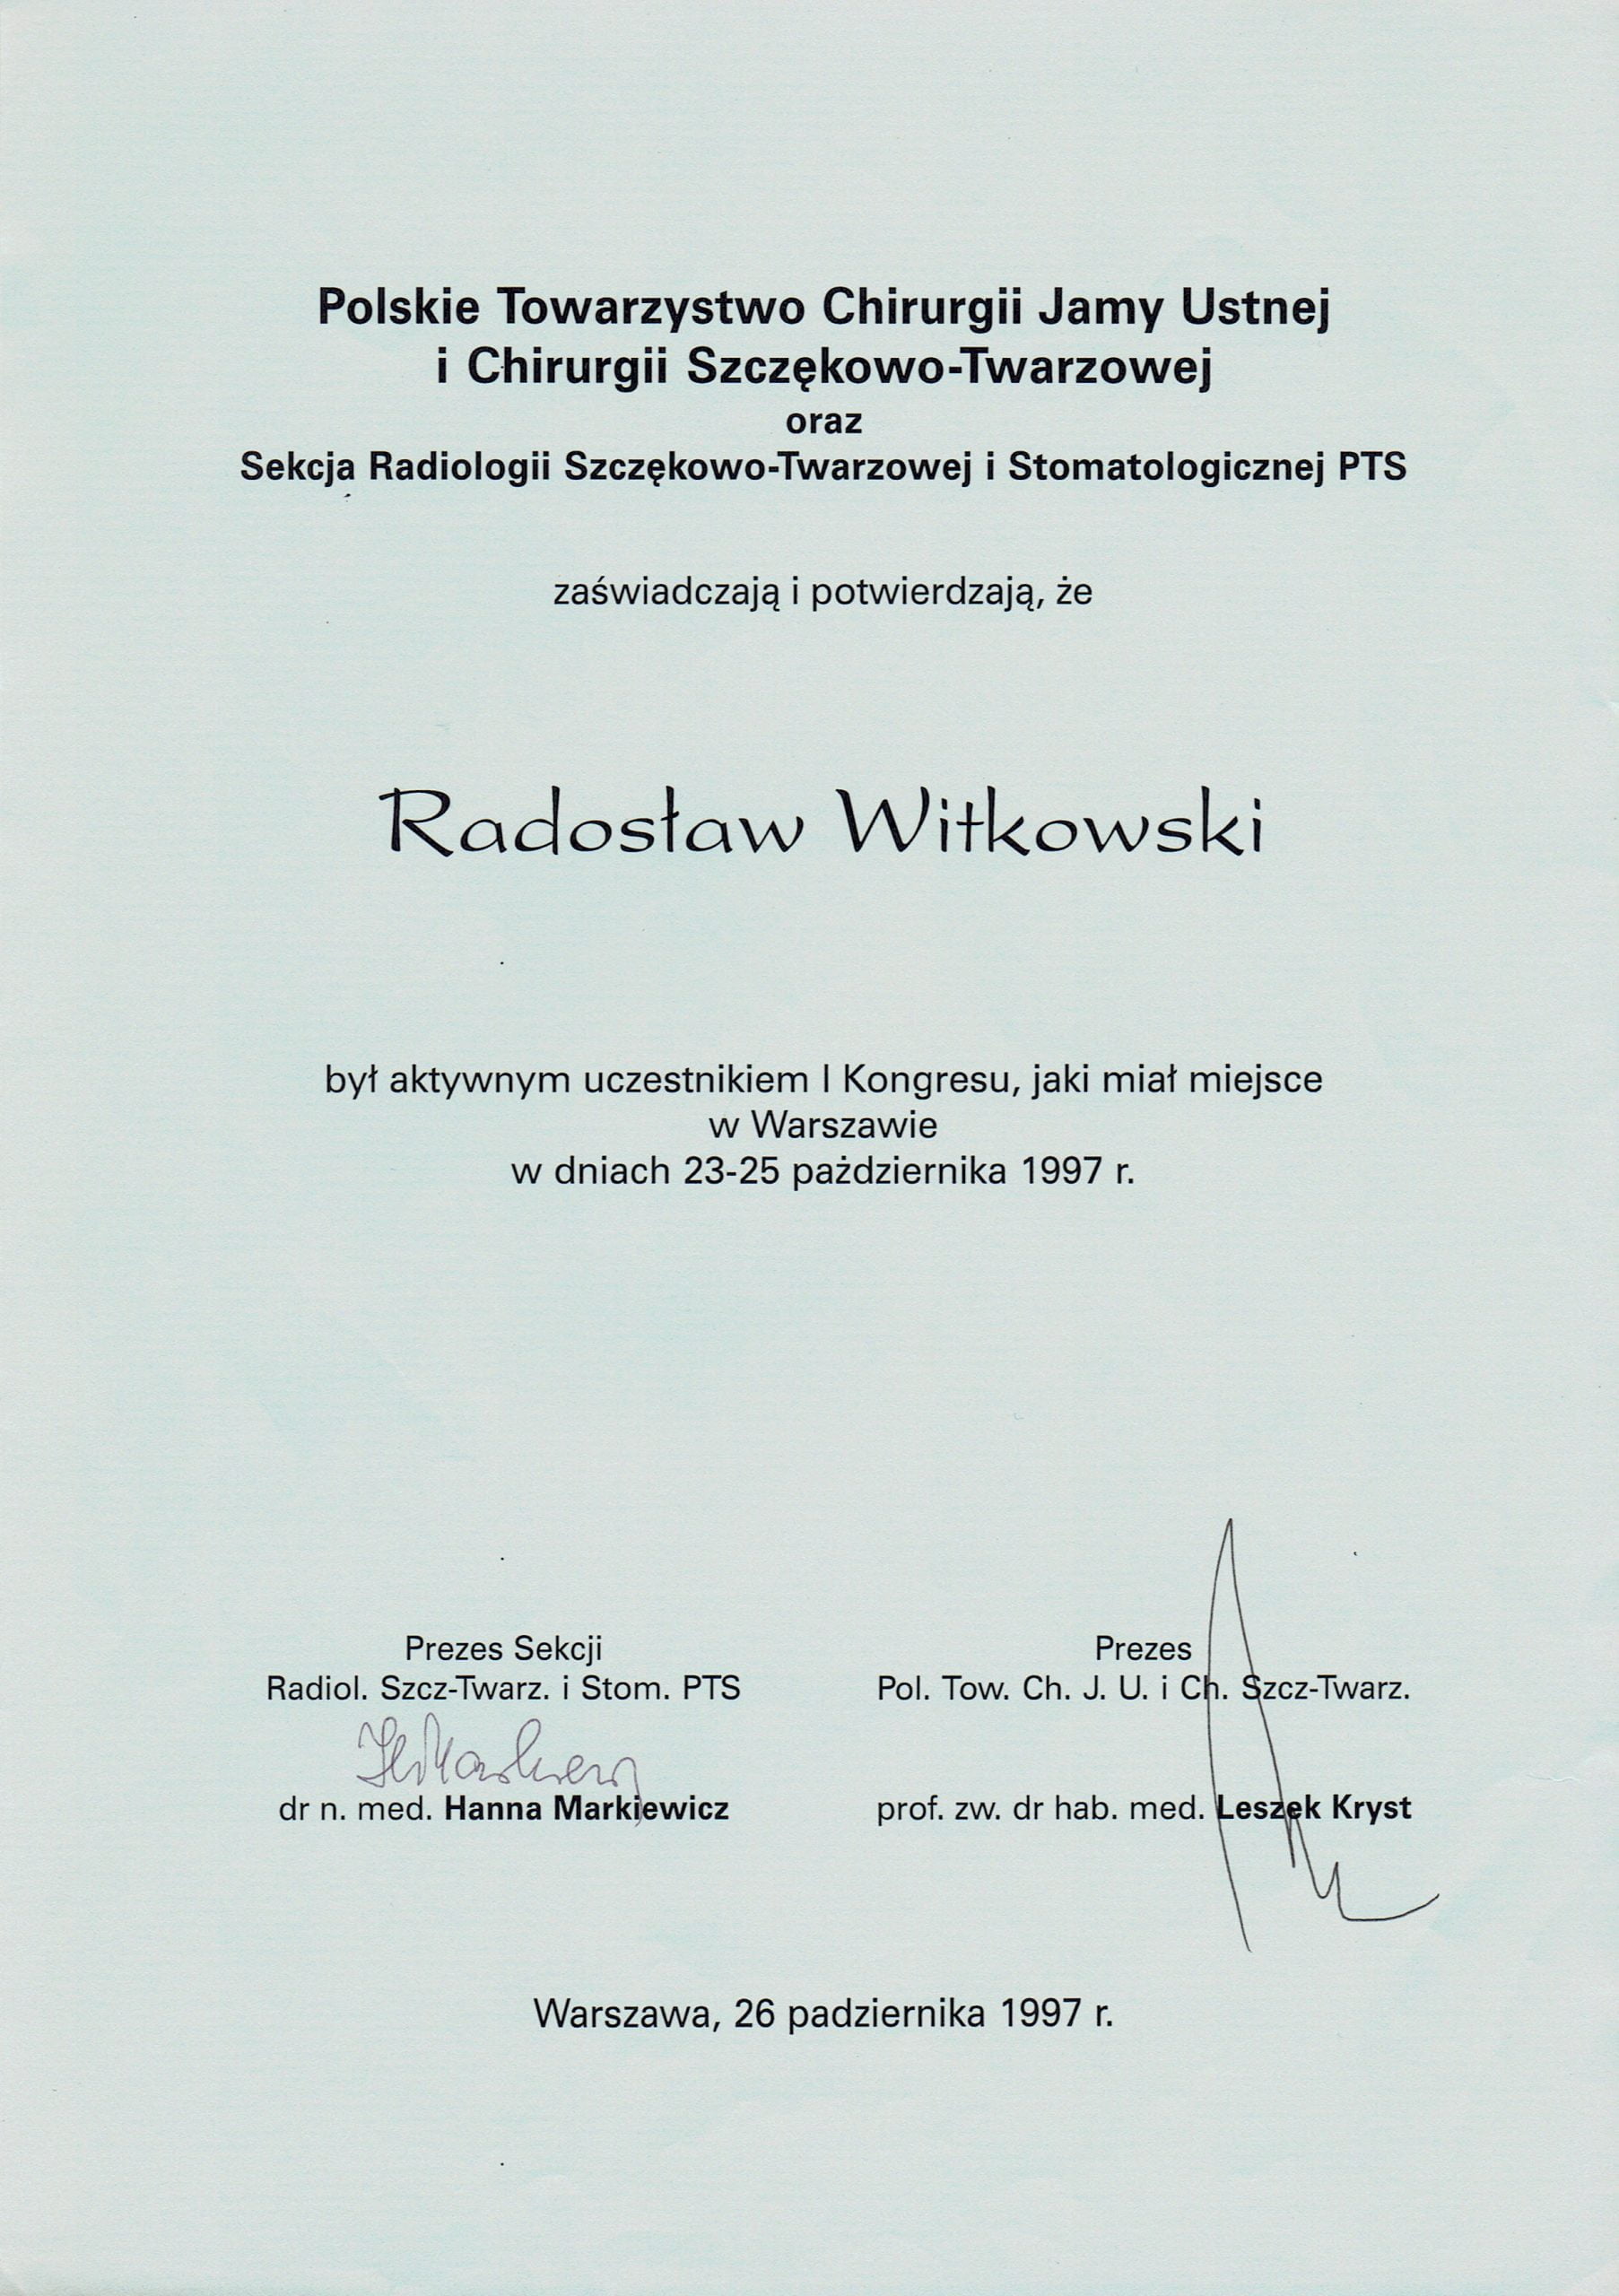 Radosław Witkowski certyfikat 16